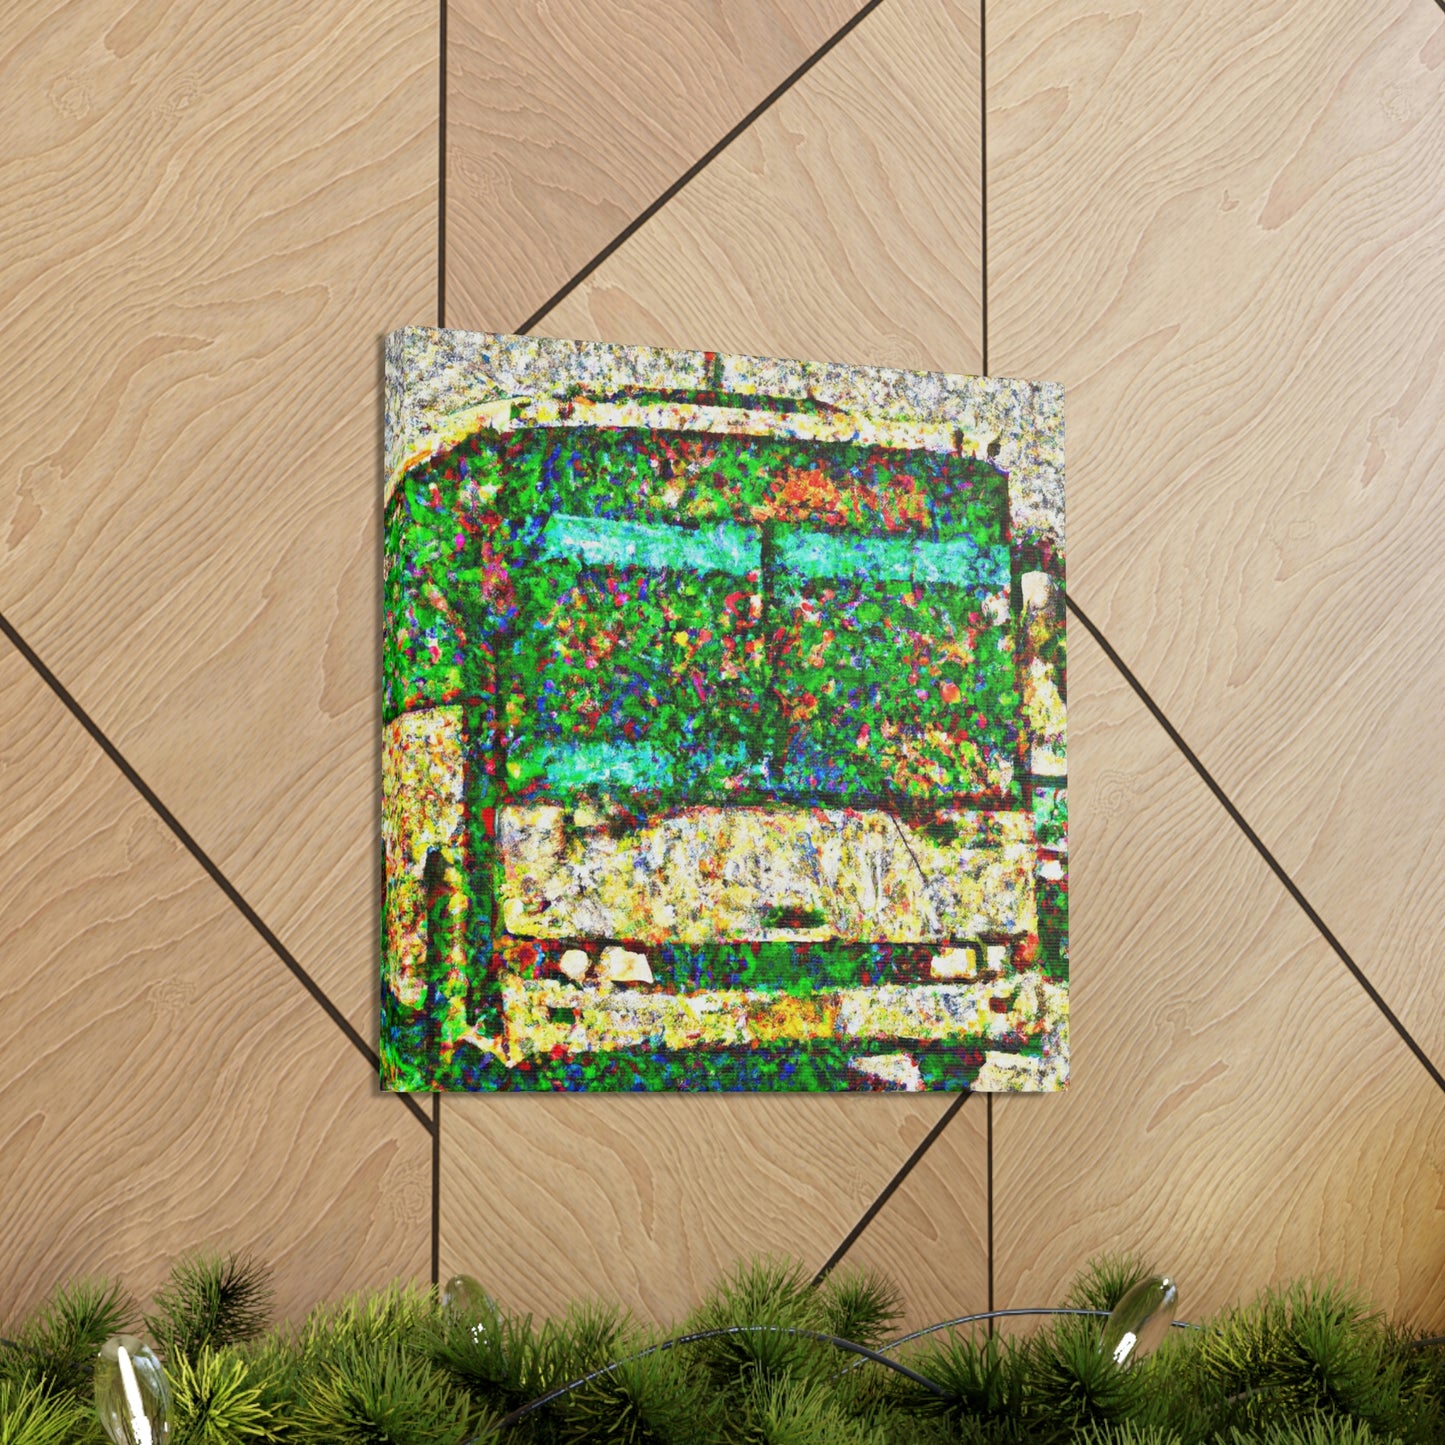 Bus in Pointillism - Canvas